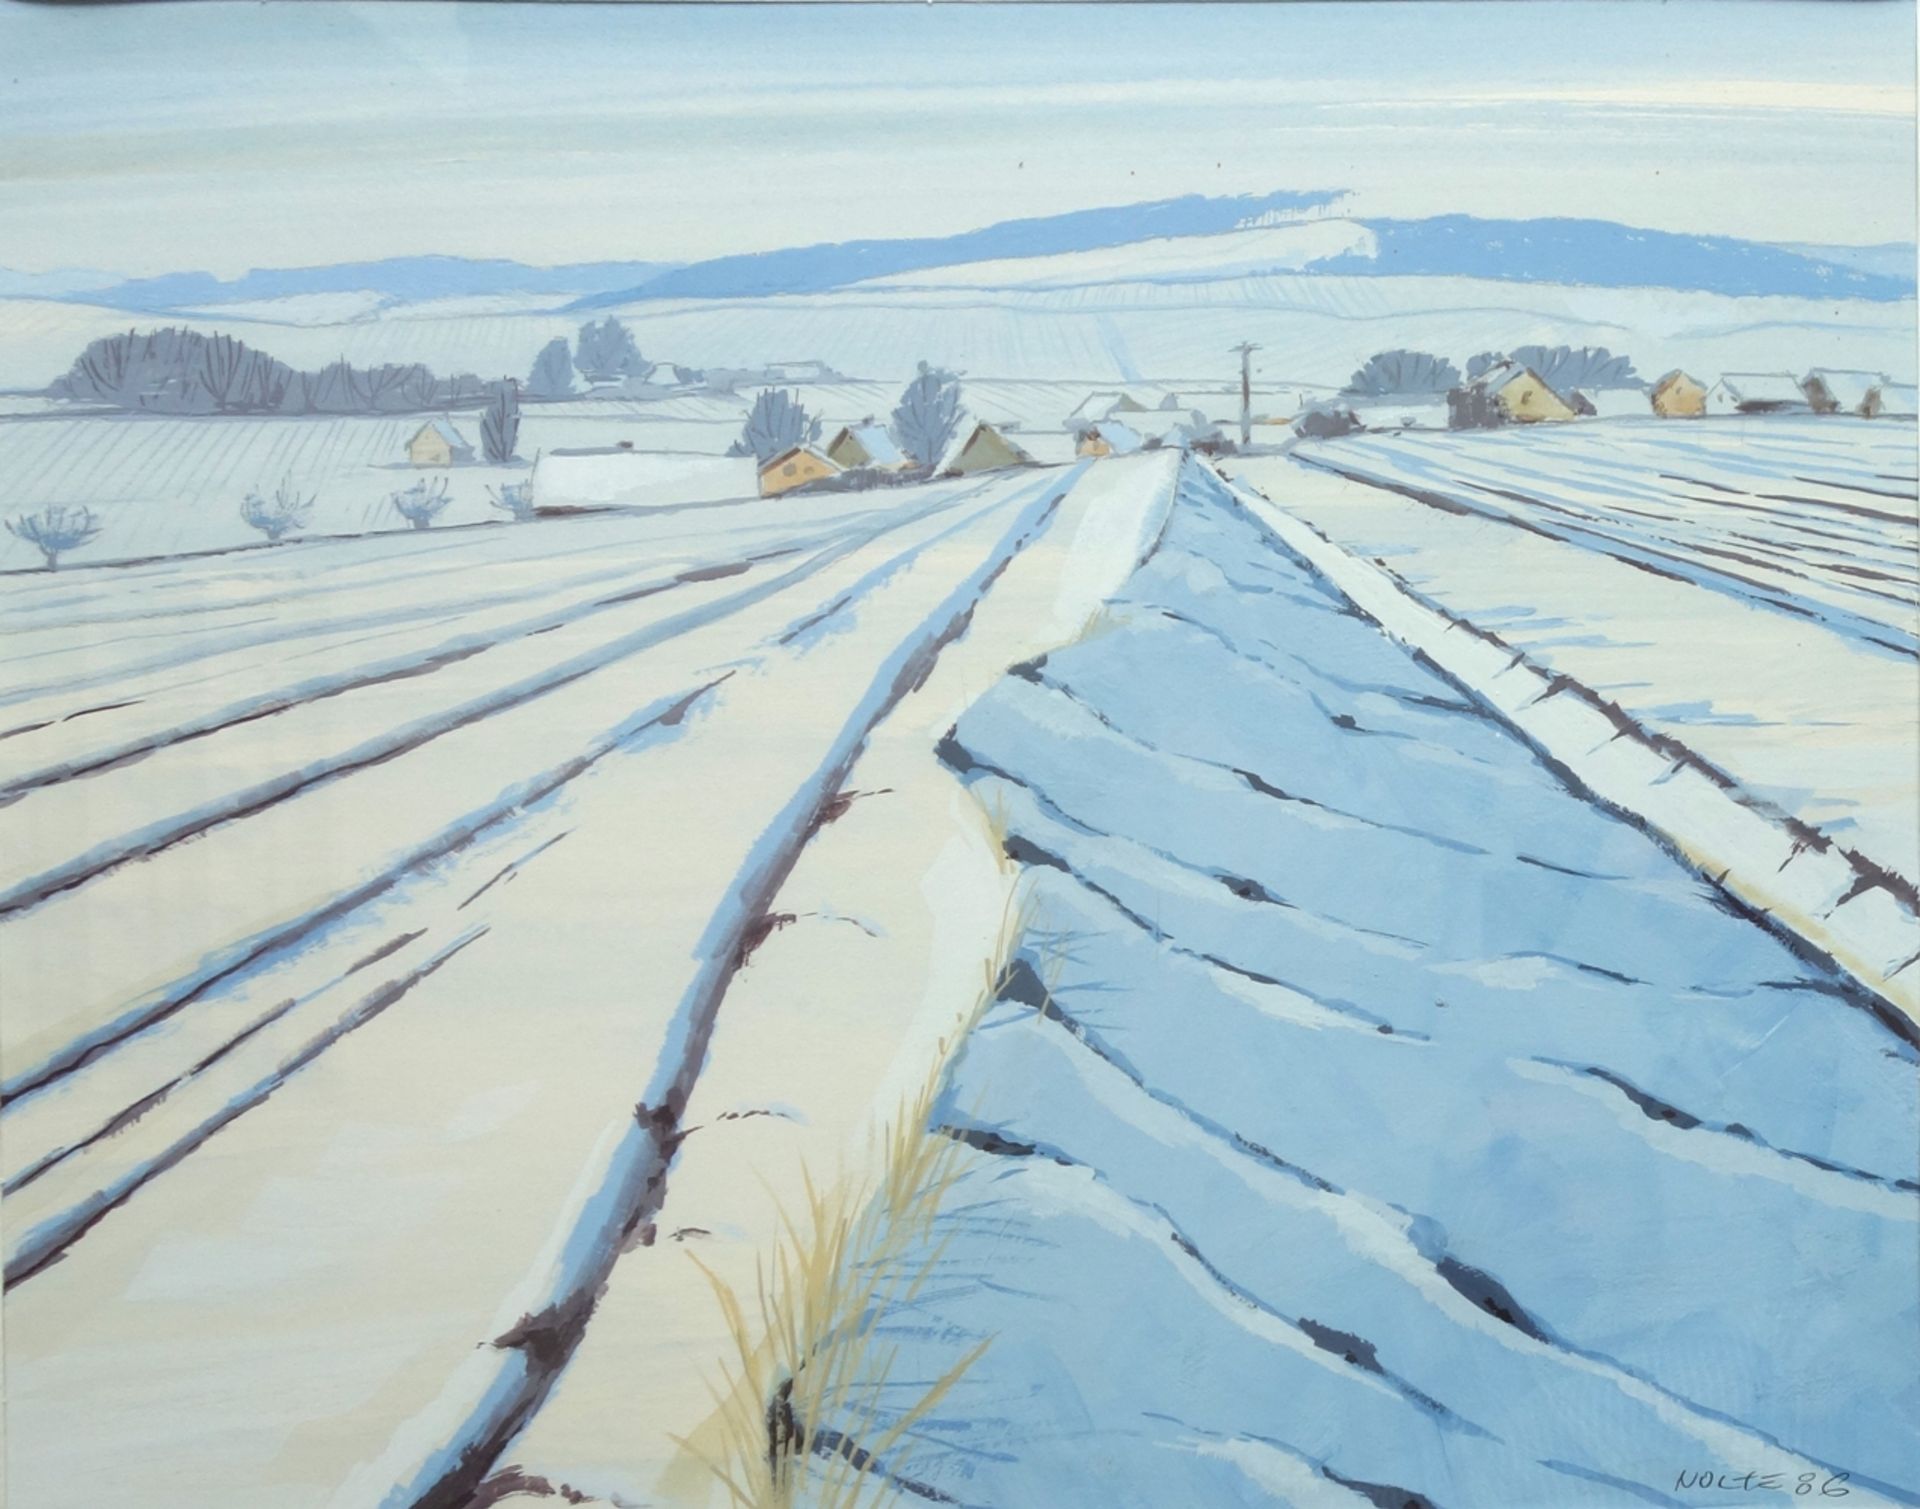 Ferdinand Nolte (1929, Braunschweig-1993, Neuss/Düsseldorf), "Winter in Holle", 1986, Acryl/